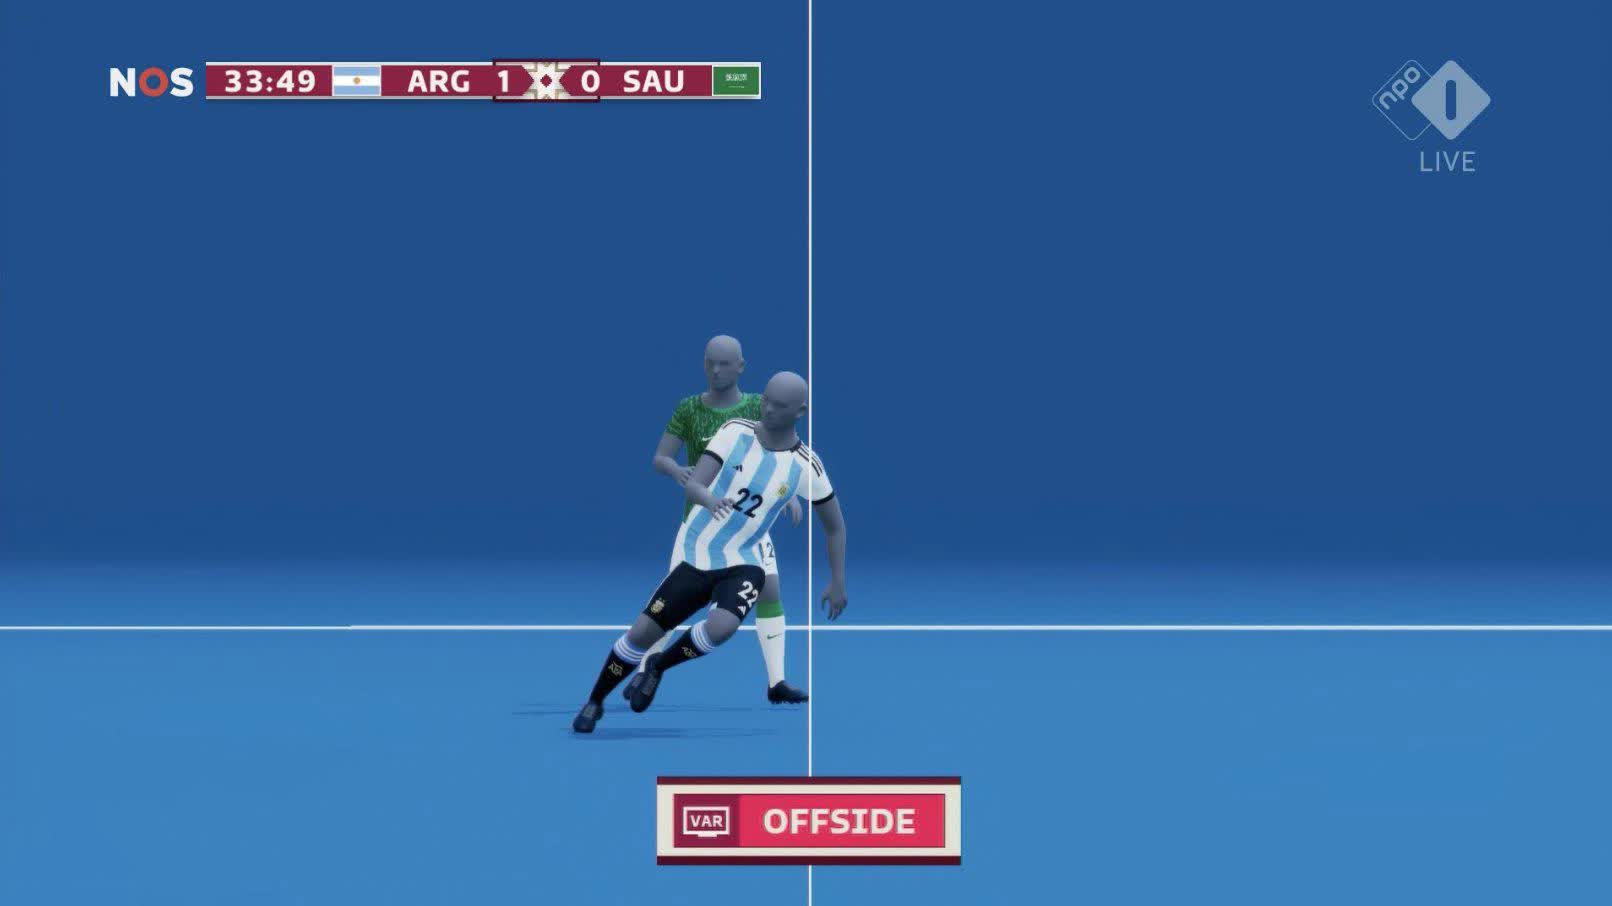 Công nghệ bắt việt vị mắc sai lầm, Argentina mất oan 1 bàn thắng - Ảnh 2.